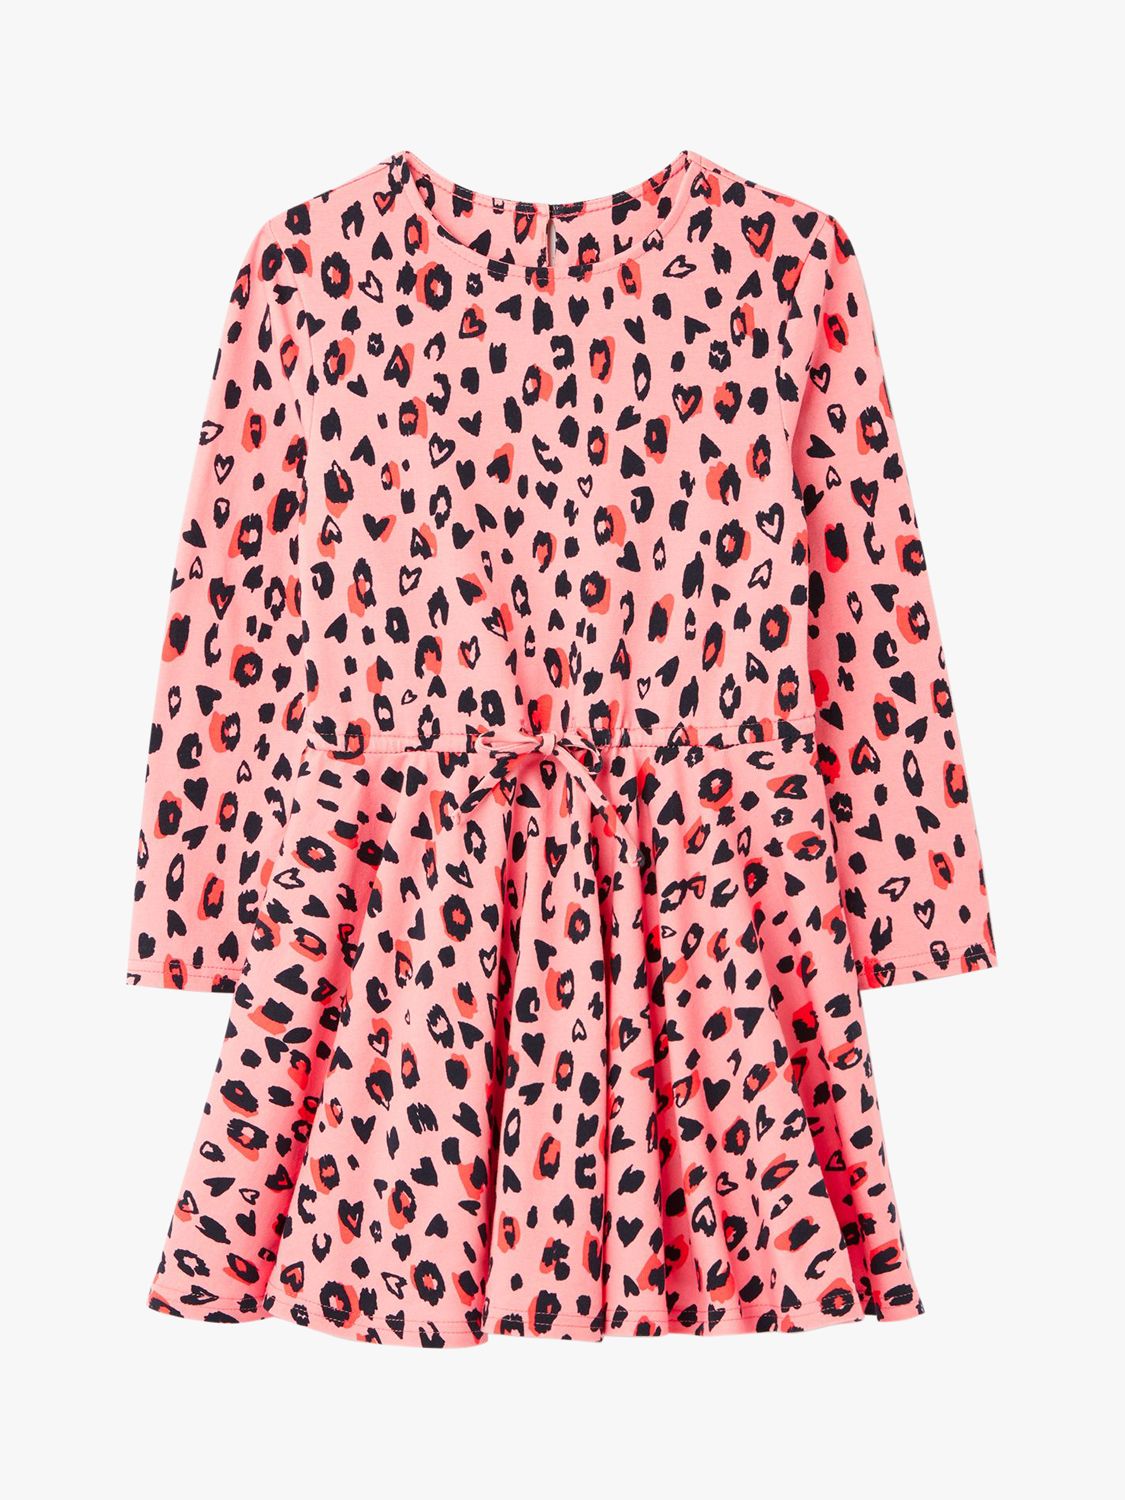 next leopard print dress girls